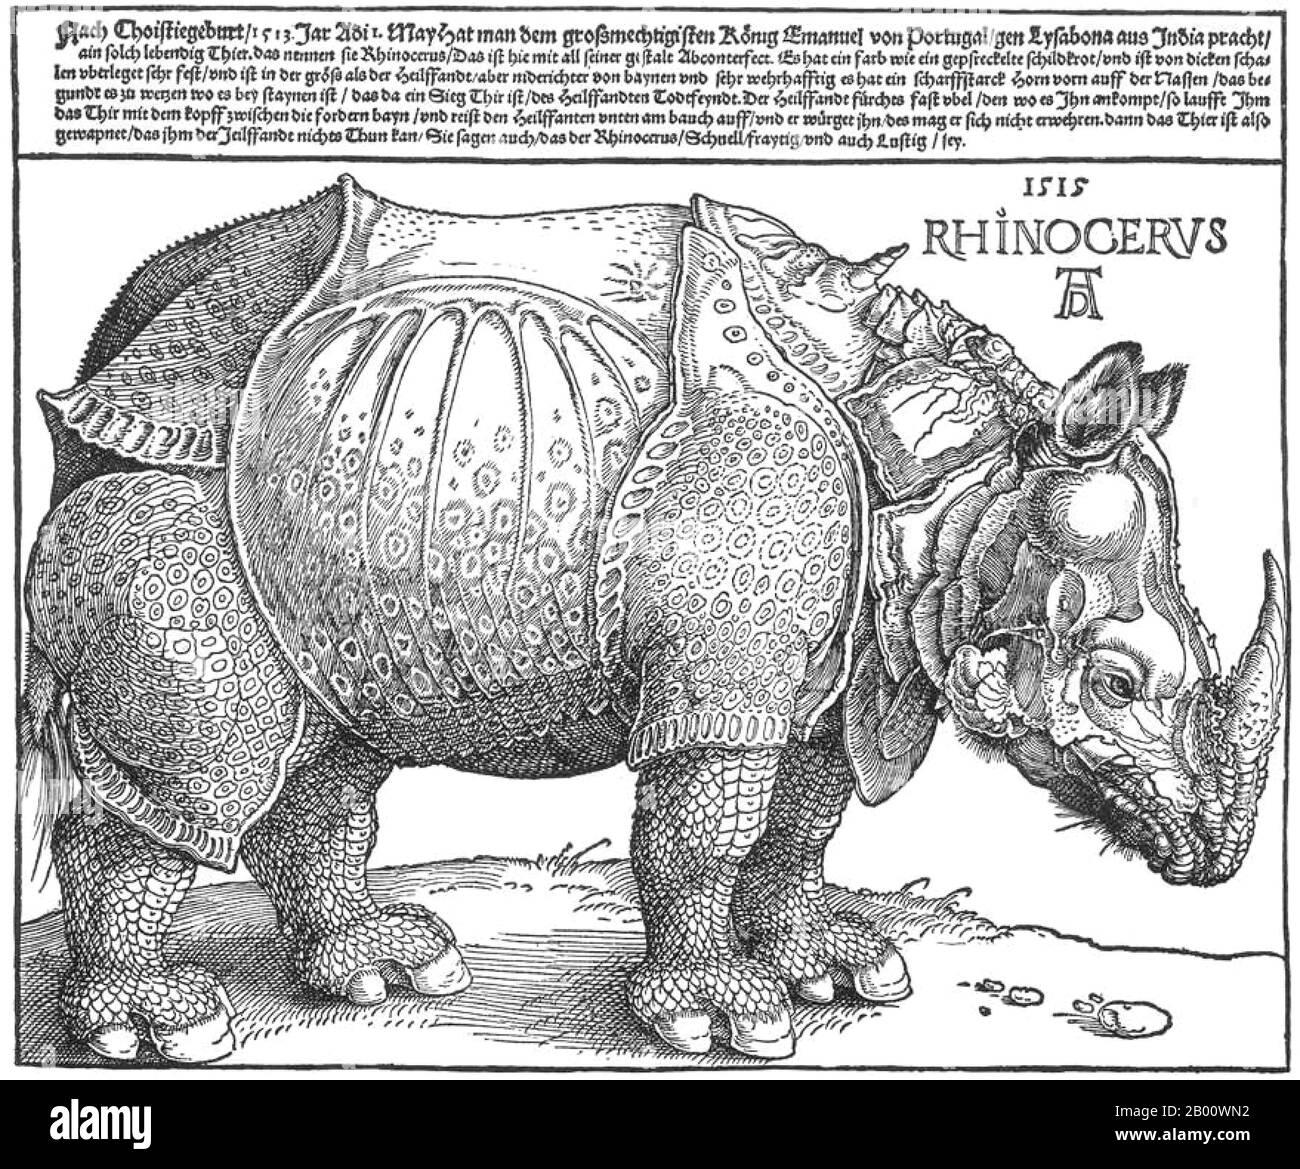 Deutschland: 'Dürer's Rhinoceros'. Holzschnitt von Albrecht Durer (1471-1528), 1515. Albrecht Dürer (21. Mai 1471 – 6. April 1528) war ein deutscher Maler, Grafiker und Theoretiker aus Nürnberg. Seine Grafiken haben seinen Ruf in ganz Europa begründet, als er noch in seinen Zwanzigern war, und er gilt seitdem konventionell als der größte Künstler der nördlichen Renaissance. Dürers Einführung klassischer Motive in die Nordkunst, durch seine Kenntnisse italienischer Künstler und deutscher Humanisten, hat sich seinen Ruf als eine der wichtigsten Figuren der Nordrenaissance gesichert. Stockfoto